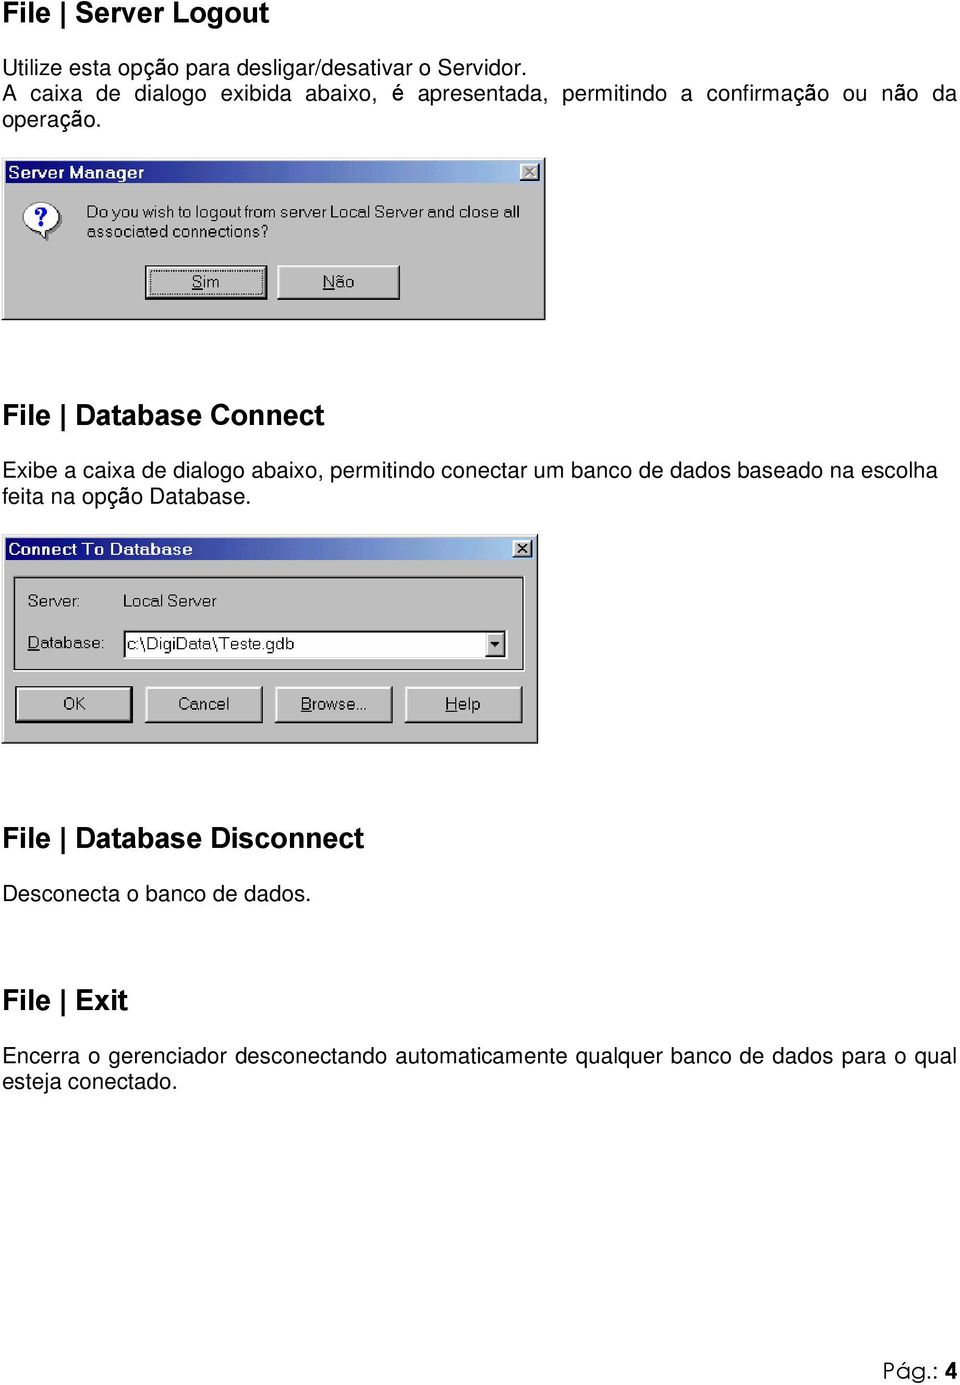 File Database Connect Exibe a caixa de dialogo abaixo, permitindo conectar um banco de dados baseado na escolha feita na